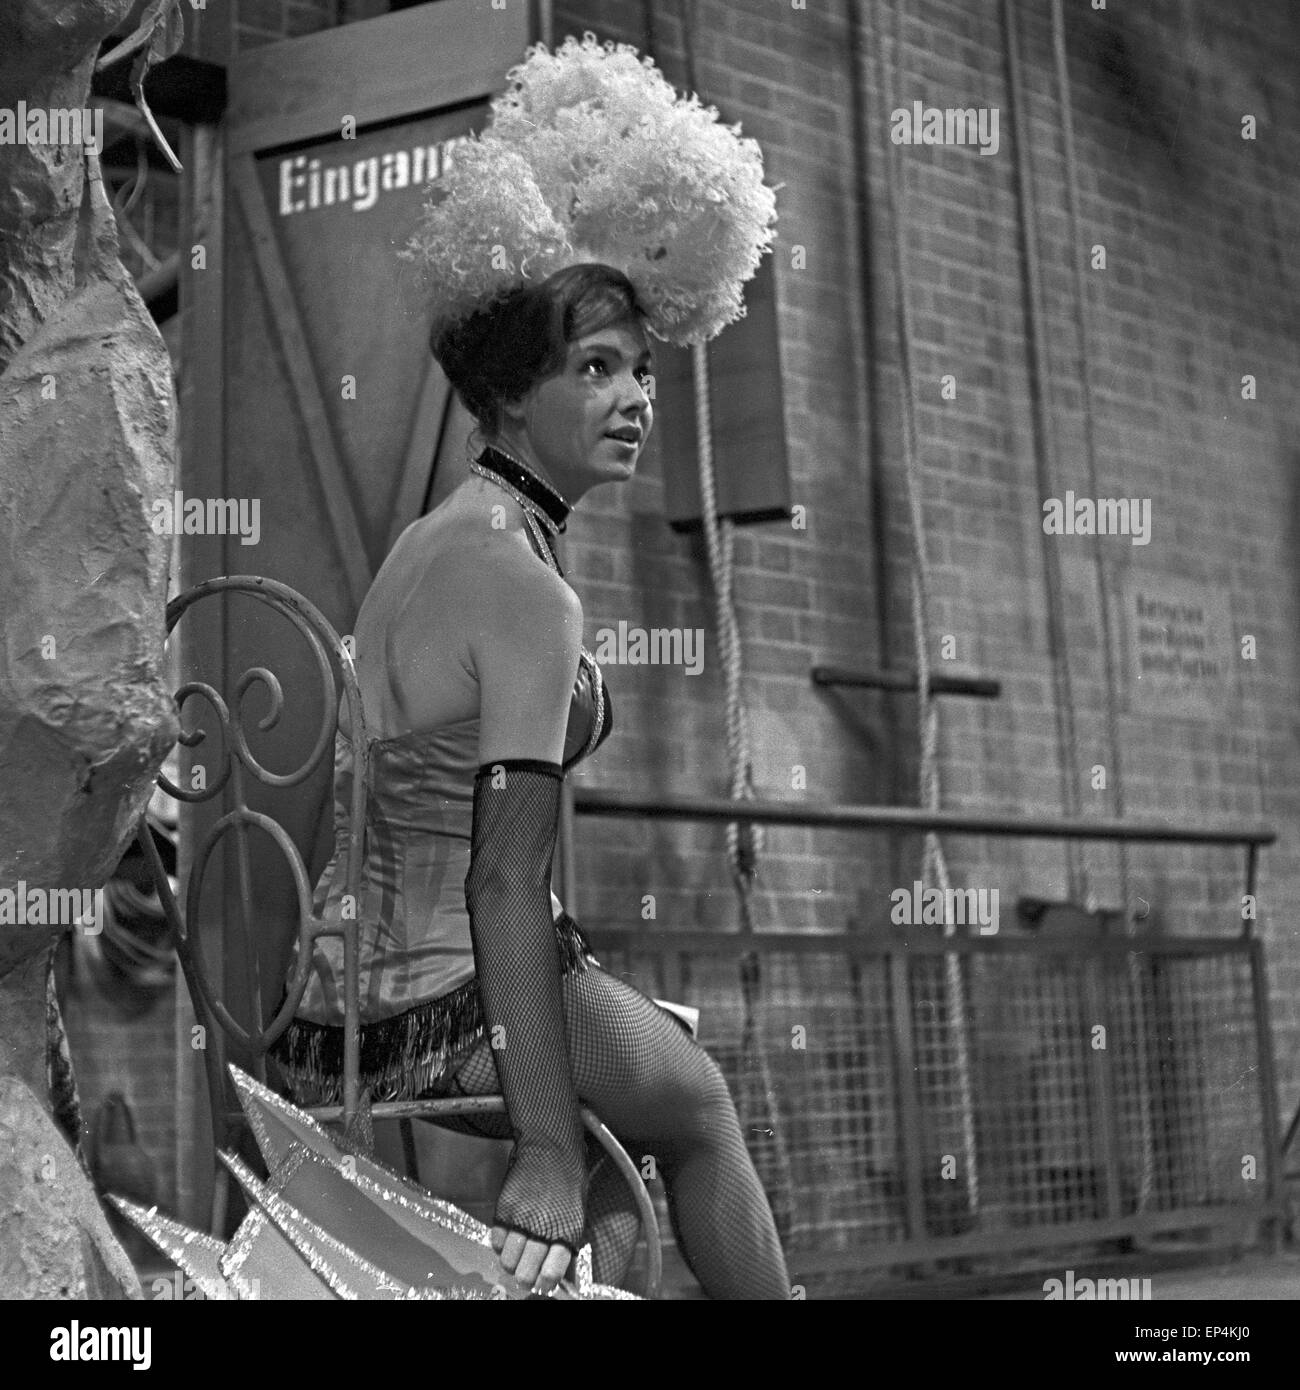 Meint Hinter der Bühne der NDR-Fernsehproduktion "Am Abend ins Odeon", 1960er Jahre Deutschland. Tänzerin bei den backstage-Bereich Stockfoto